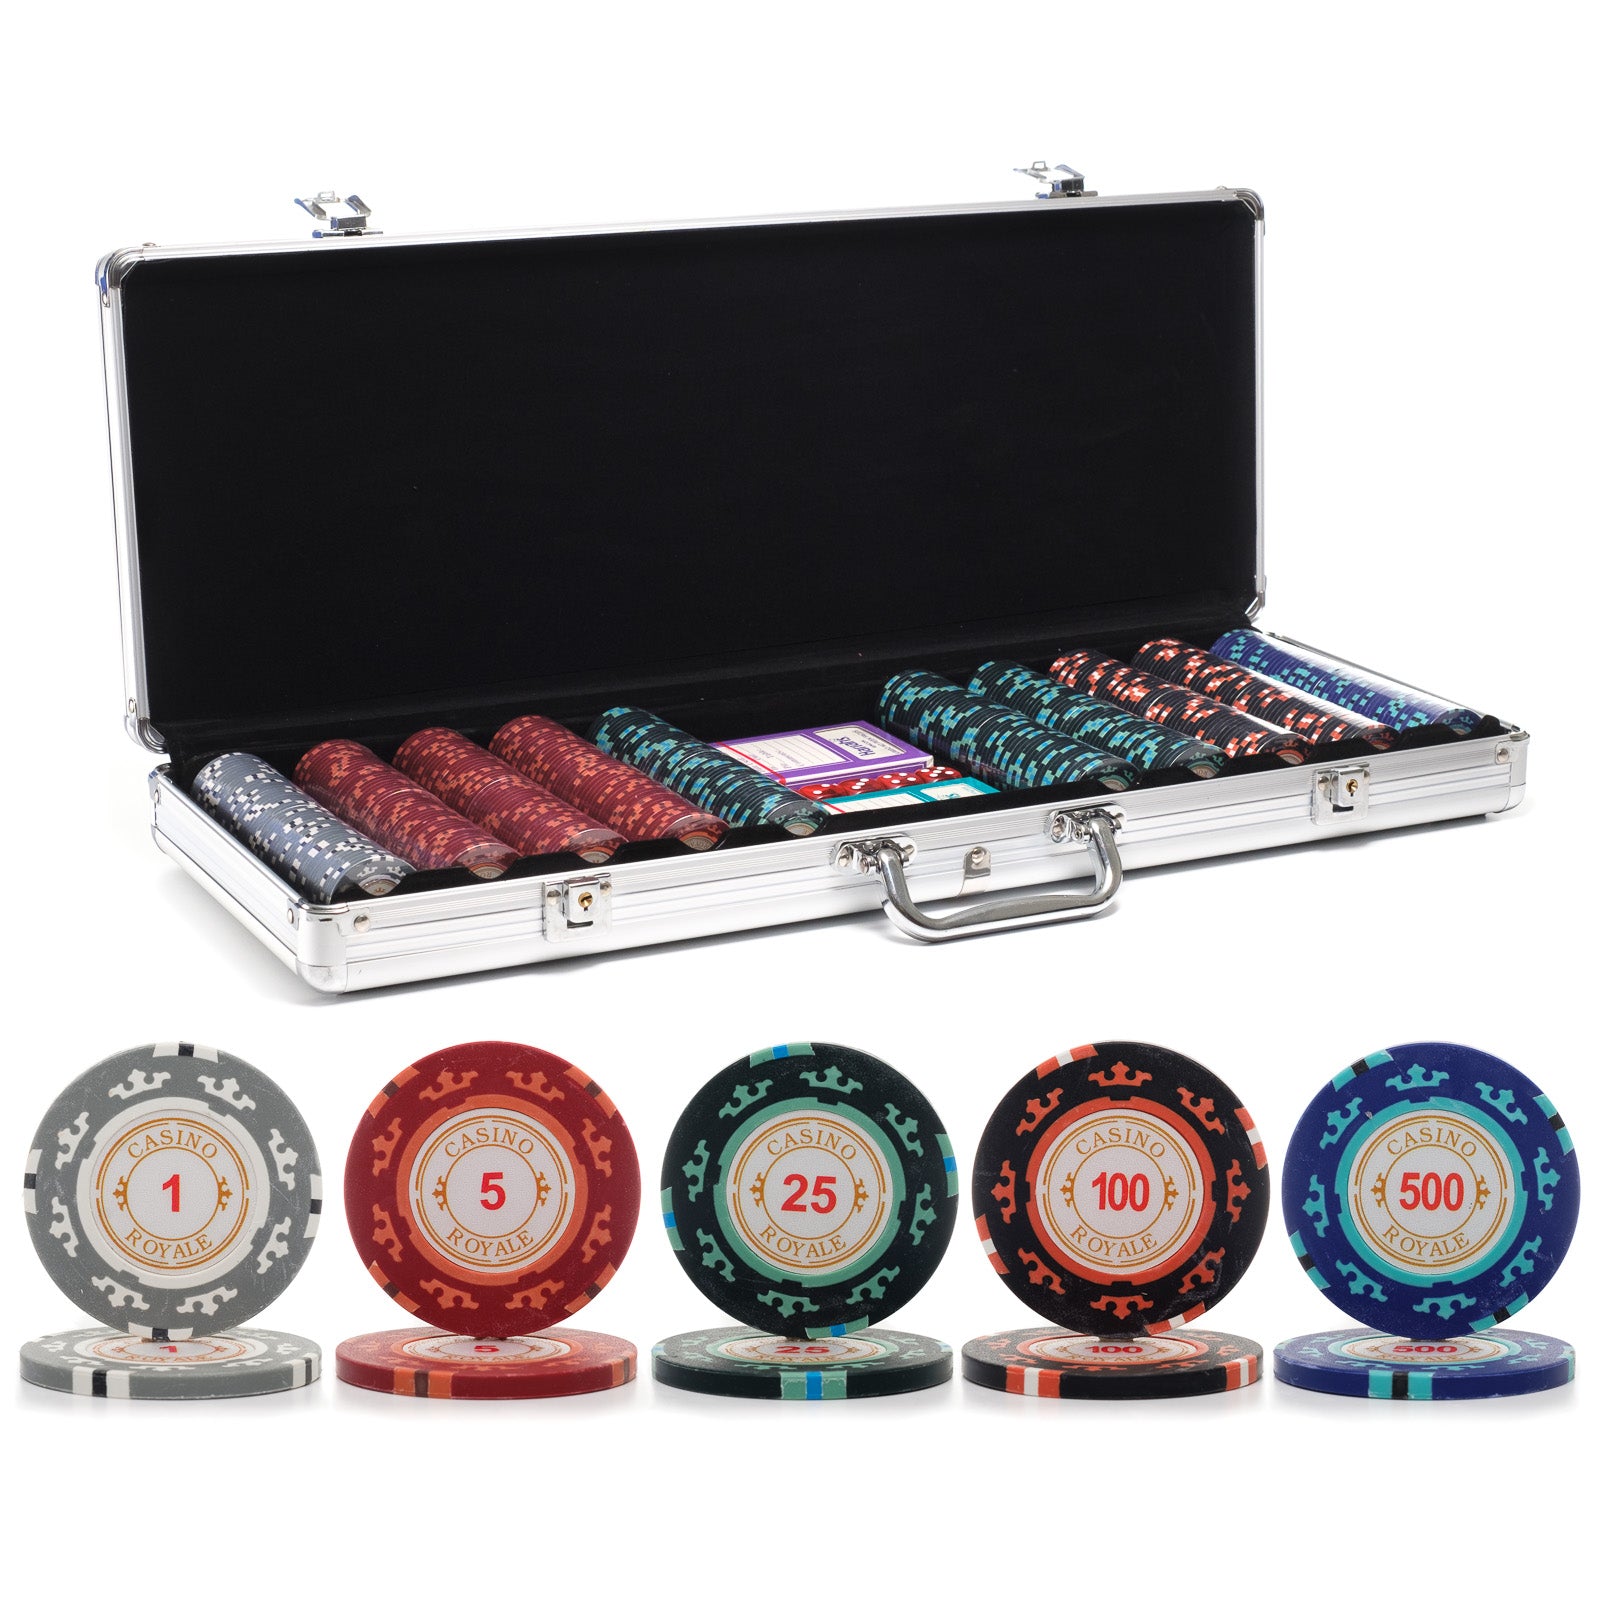 grund Lagring at ringe 500 pc. 14g Casino Royale Poker Chip Set with Aluminum Case | Casino Supply